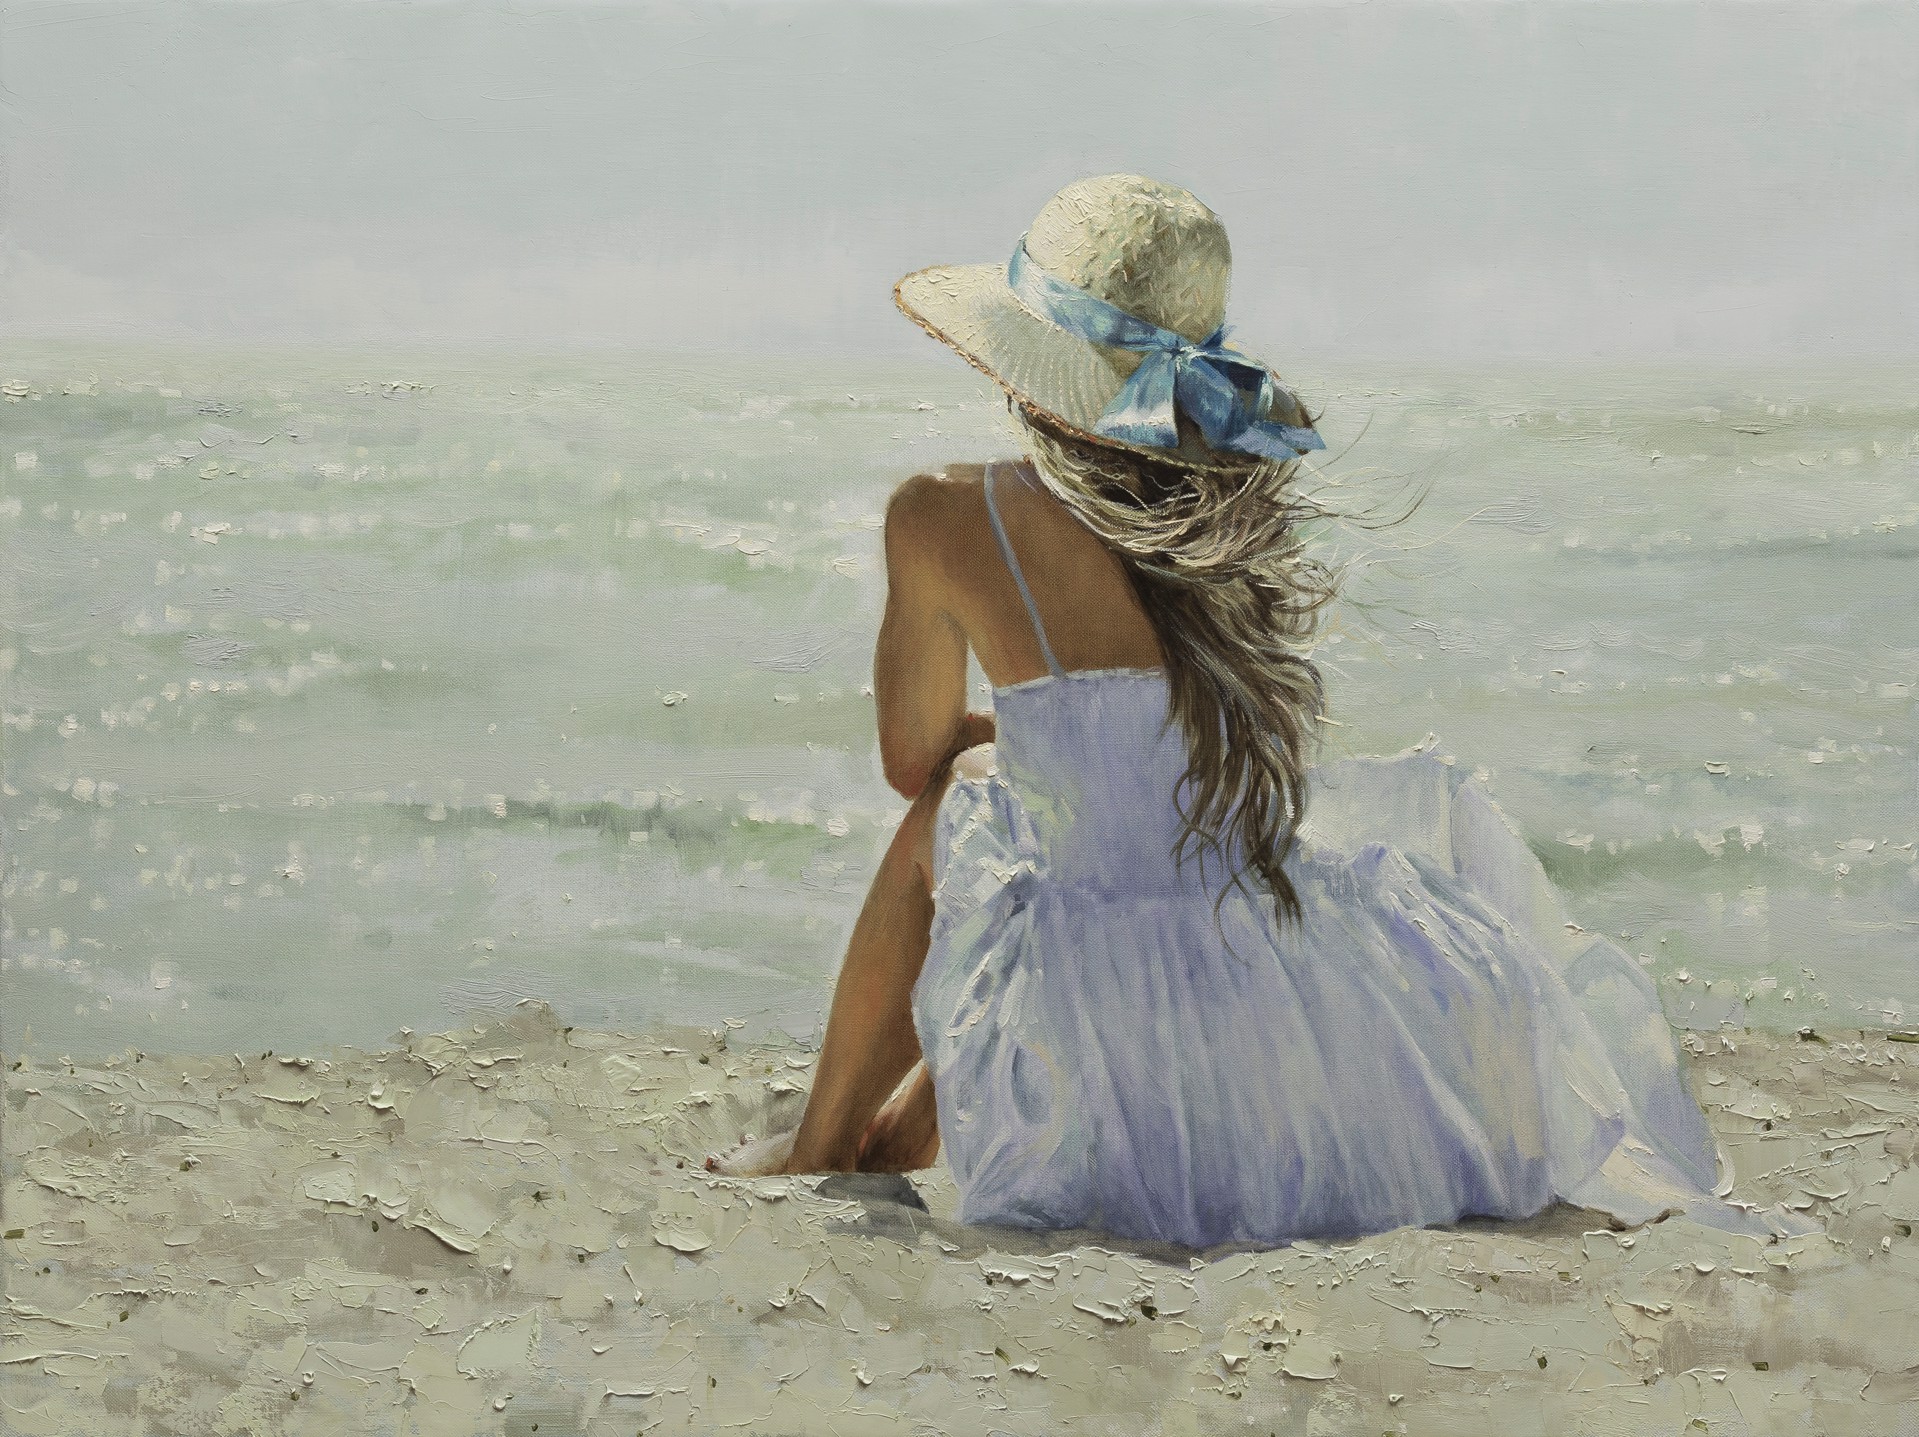 "Ocean Breeze" by Oleg Trofimov